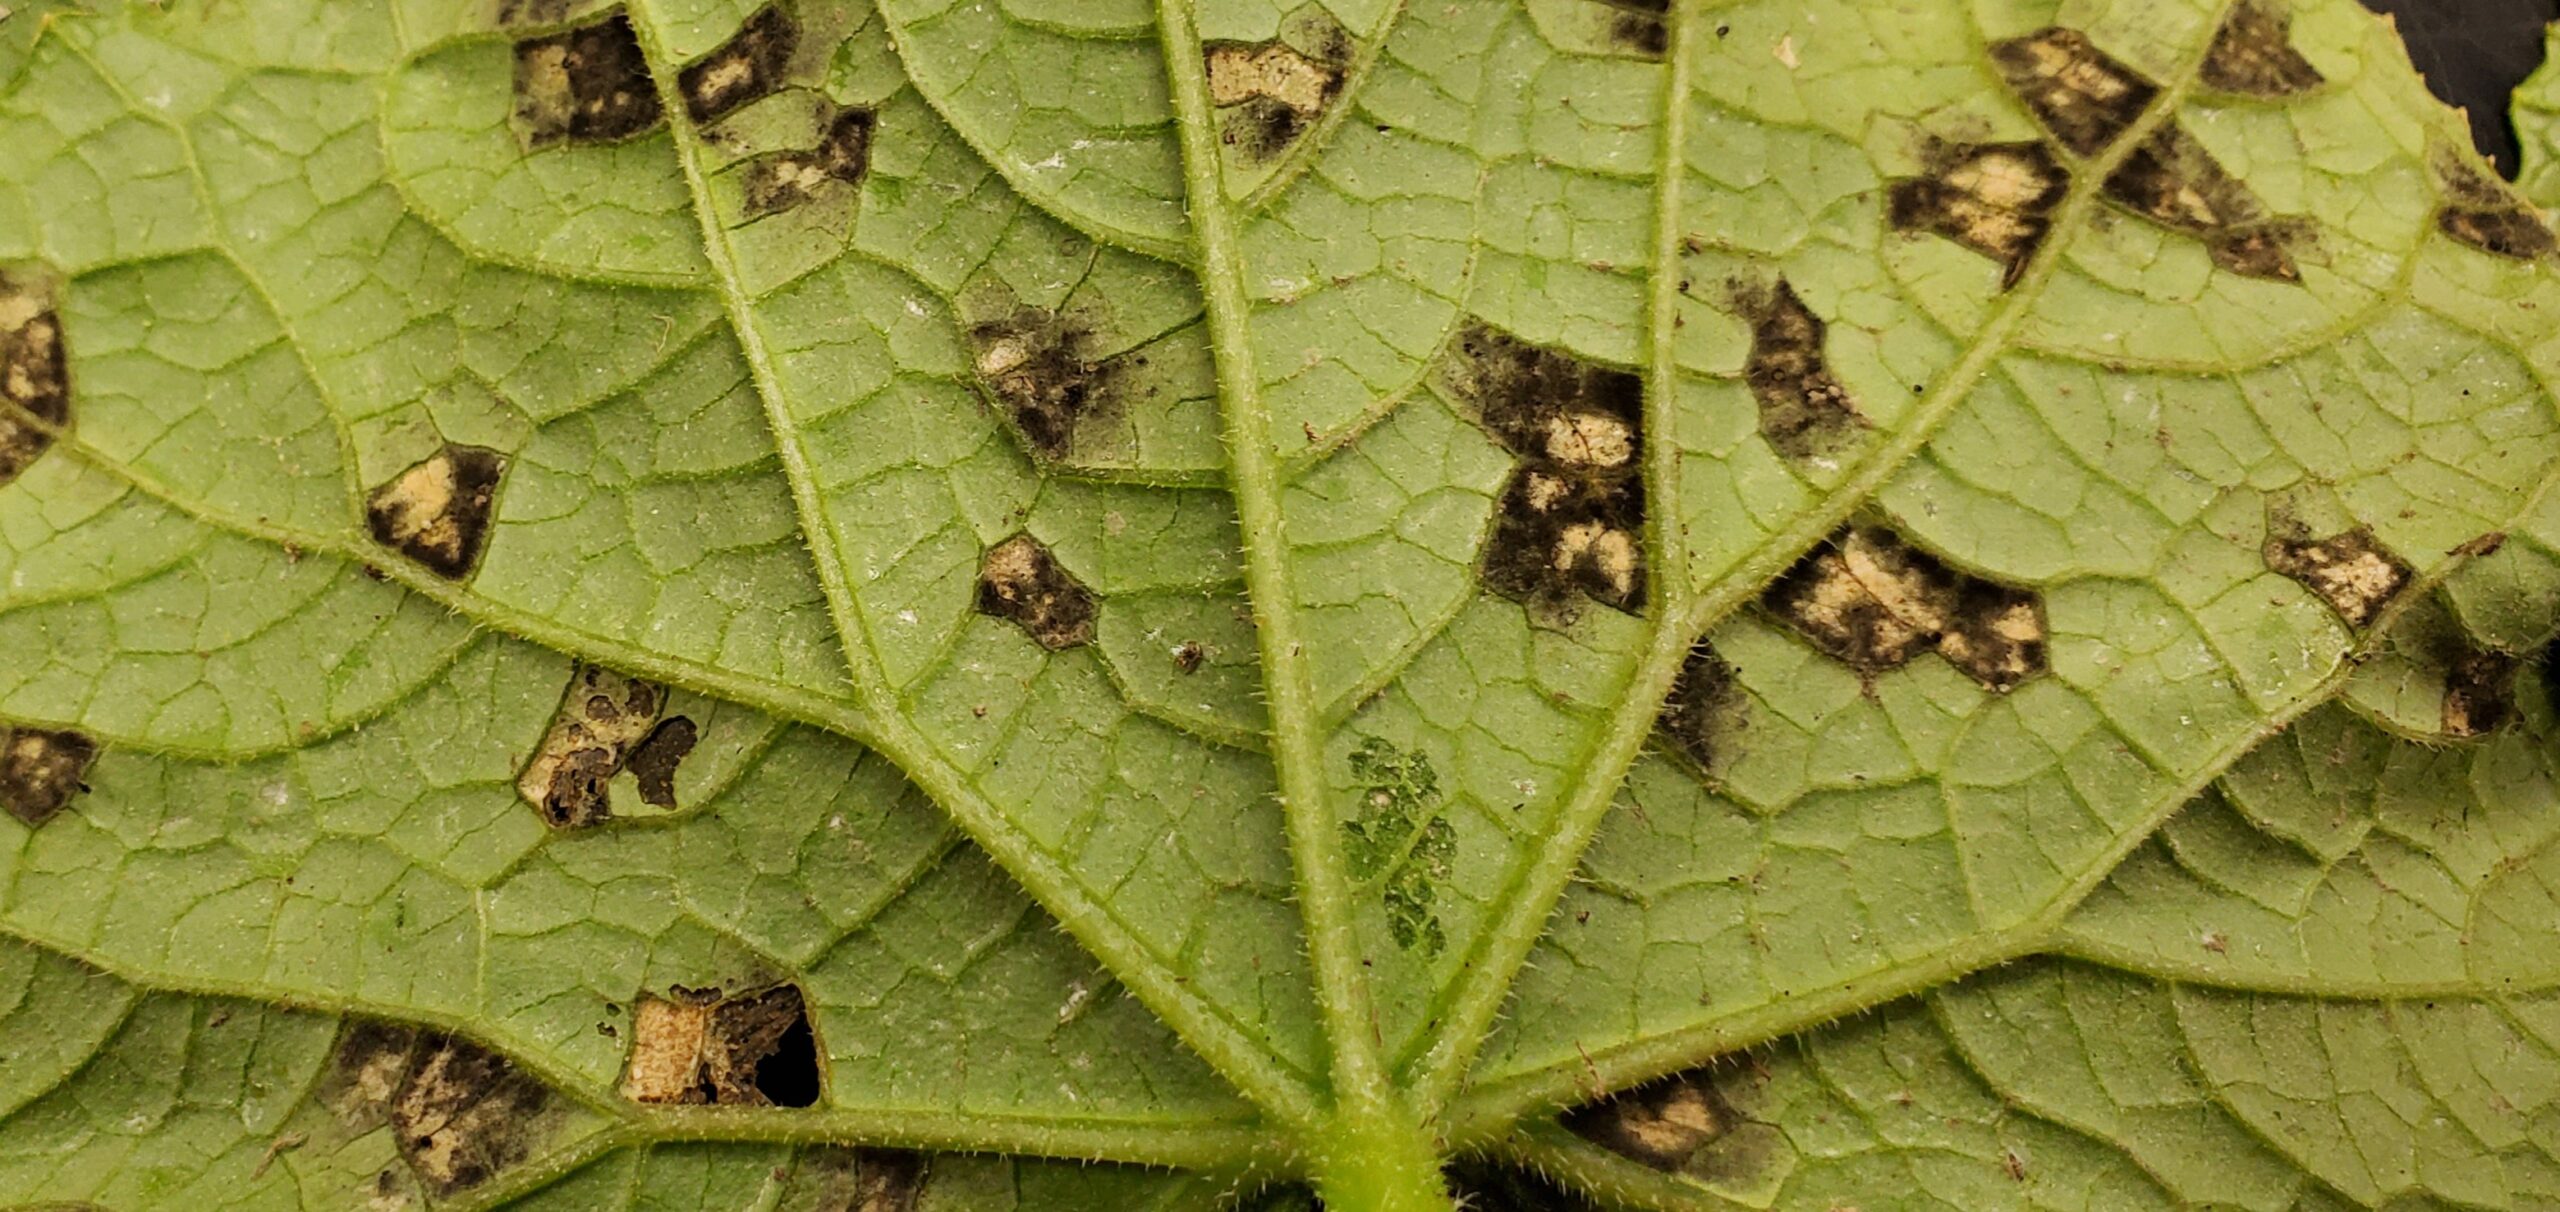 CDM sporulating on underside of infected cucumber leaf